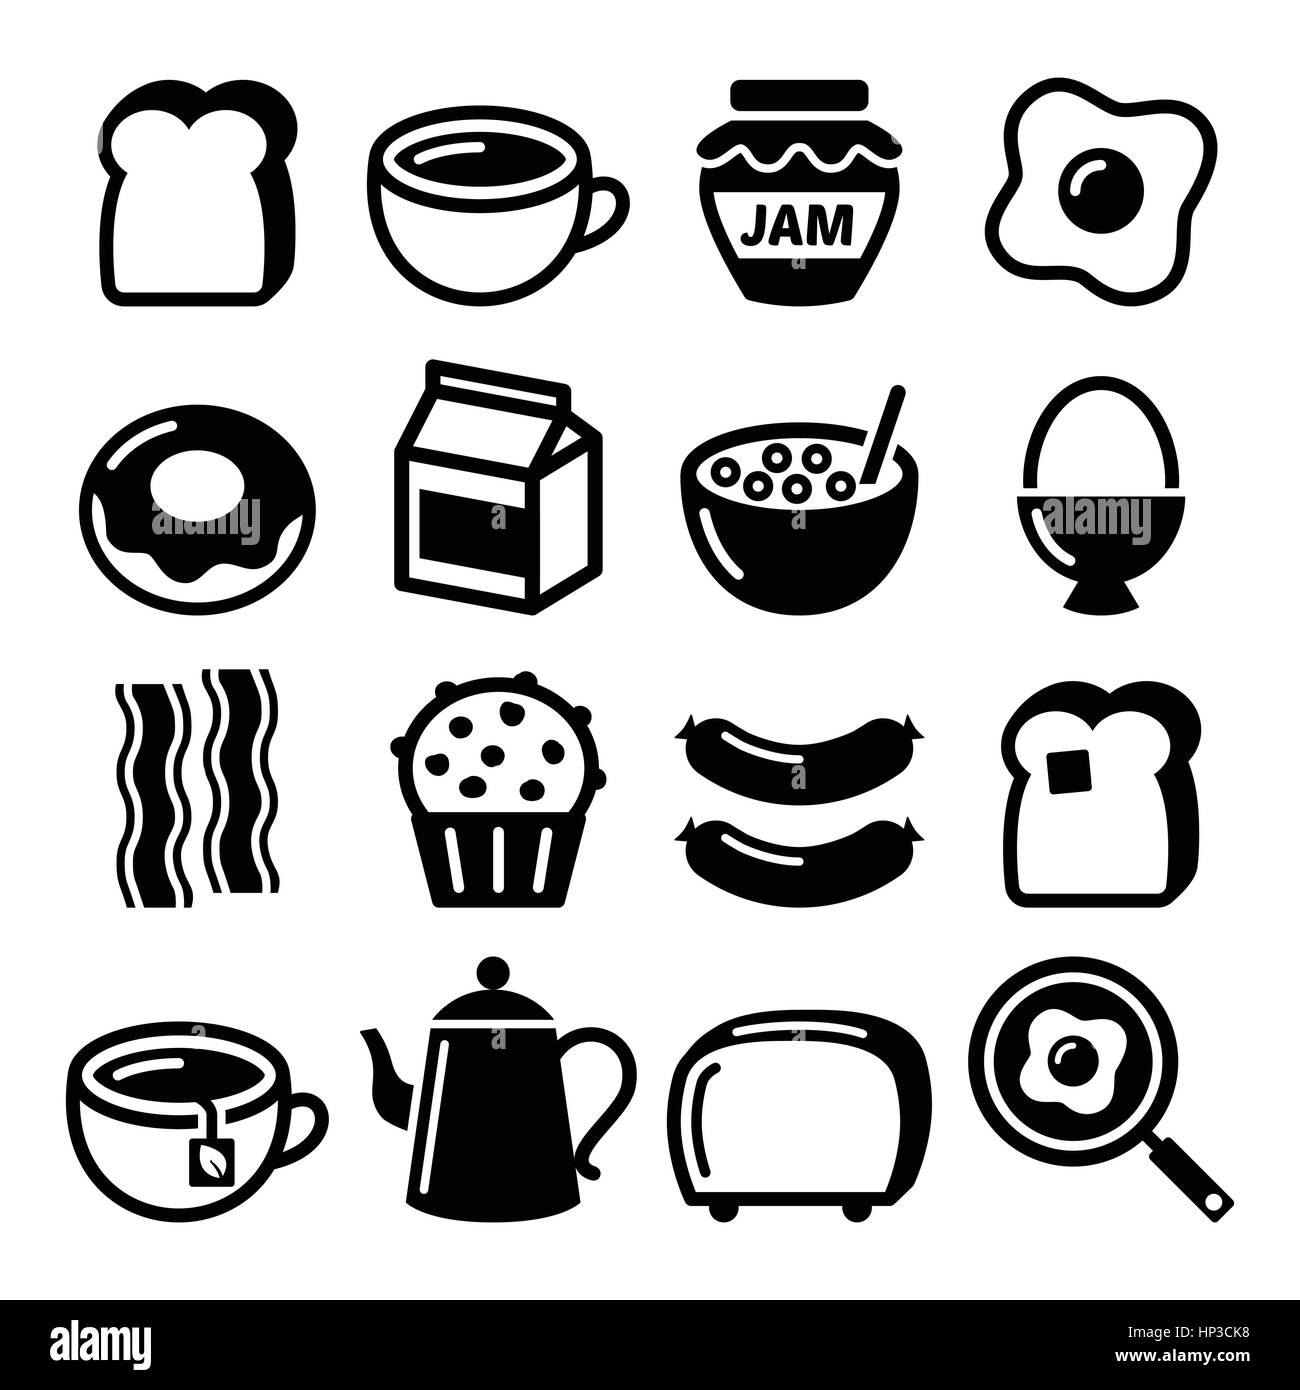 Frühstück Essen Vektor Icons Set - Toast, Eiern, Speck, Kaffee. Vektor Icons Set von verschiedenen Frühstück Essen isoliert auf weiss Stock Vektor